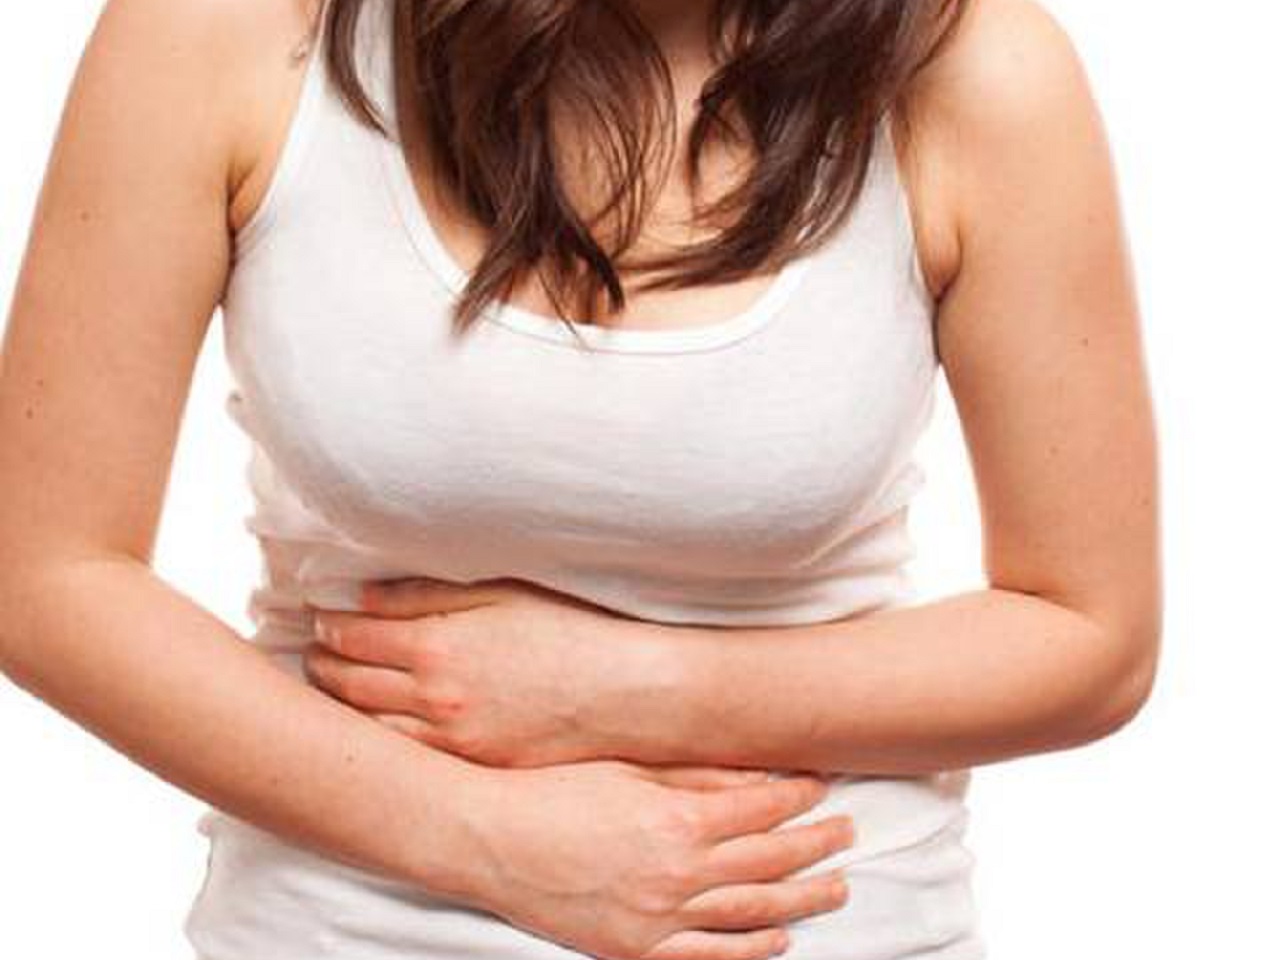 Vị trí đau bụng nào thường liên quan đến vấn đề về tiêu hóa?
